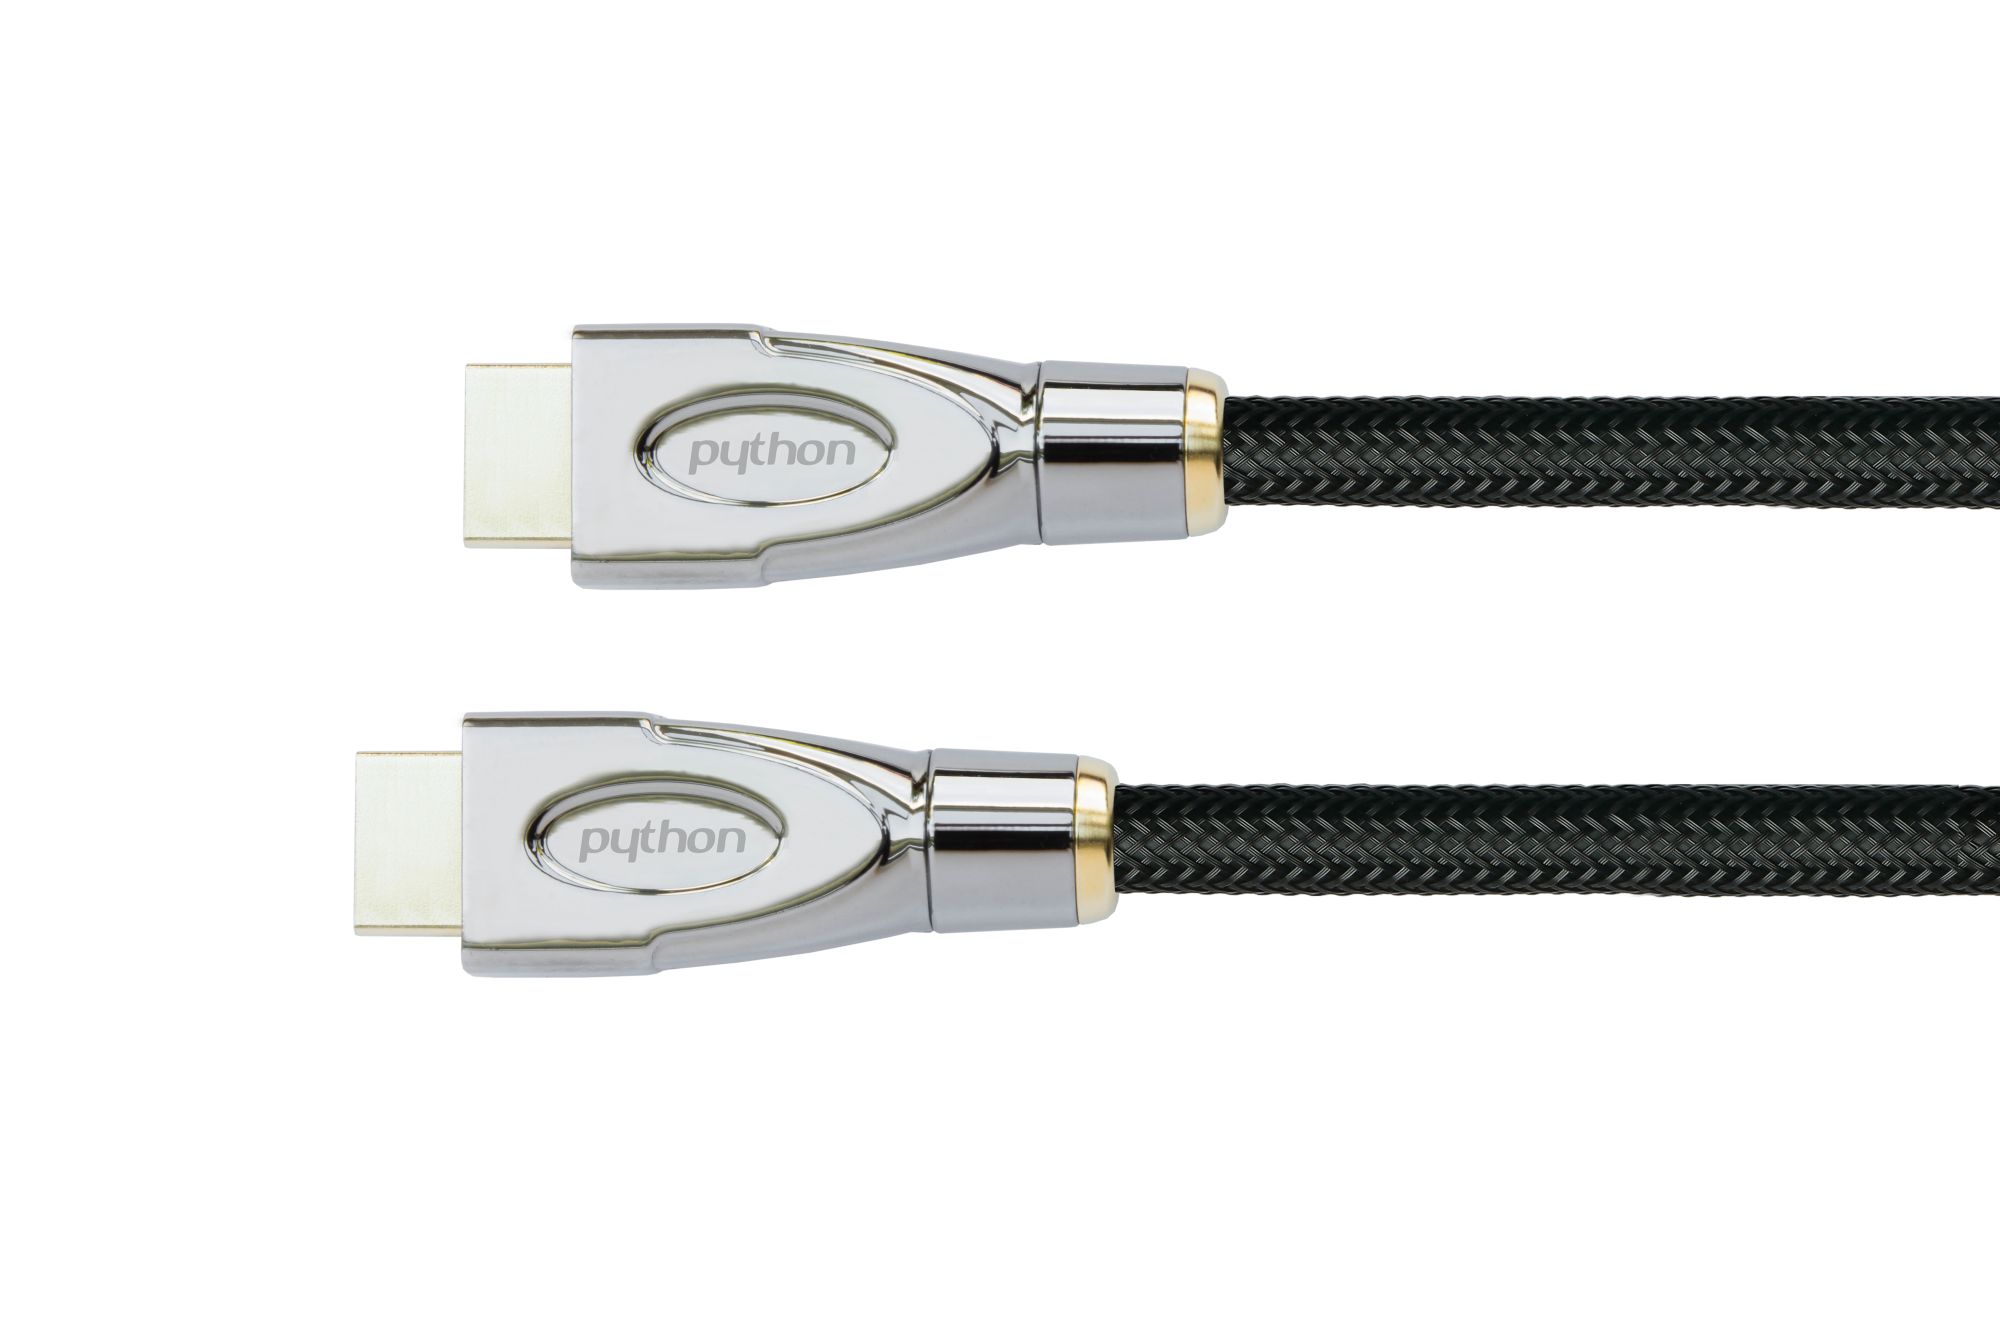 Anschlusskabel High-Speed-HDMI® mit Ethernet 4K2K/UHD, AKTIV (Redmere Chips), Nylobgefl. schwarz,25m